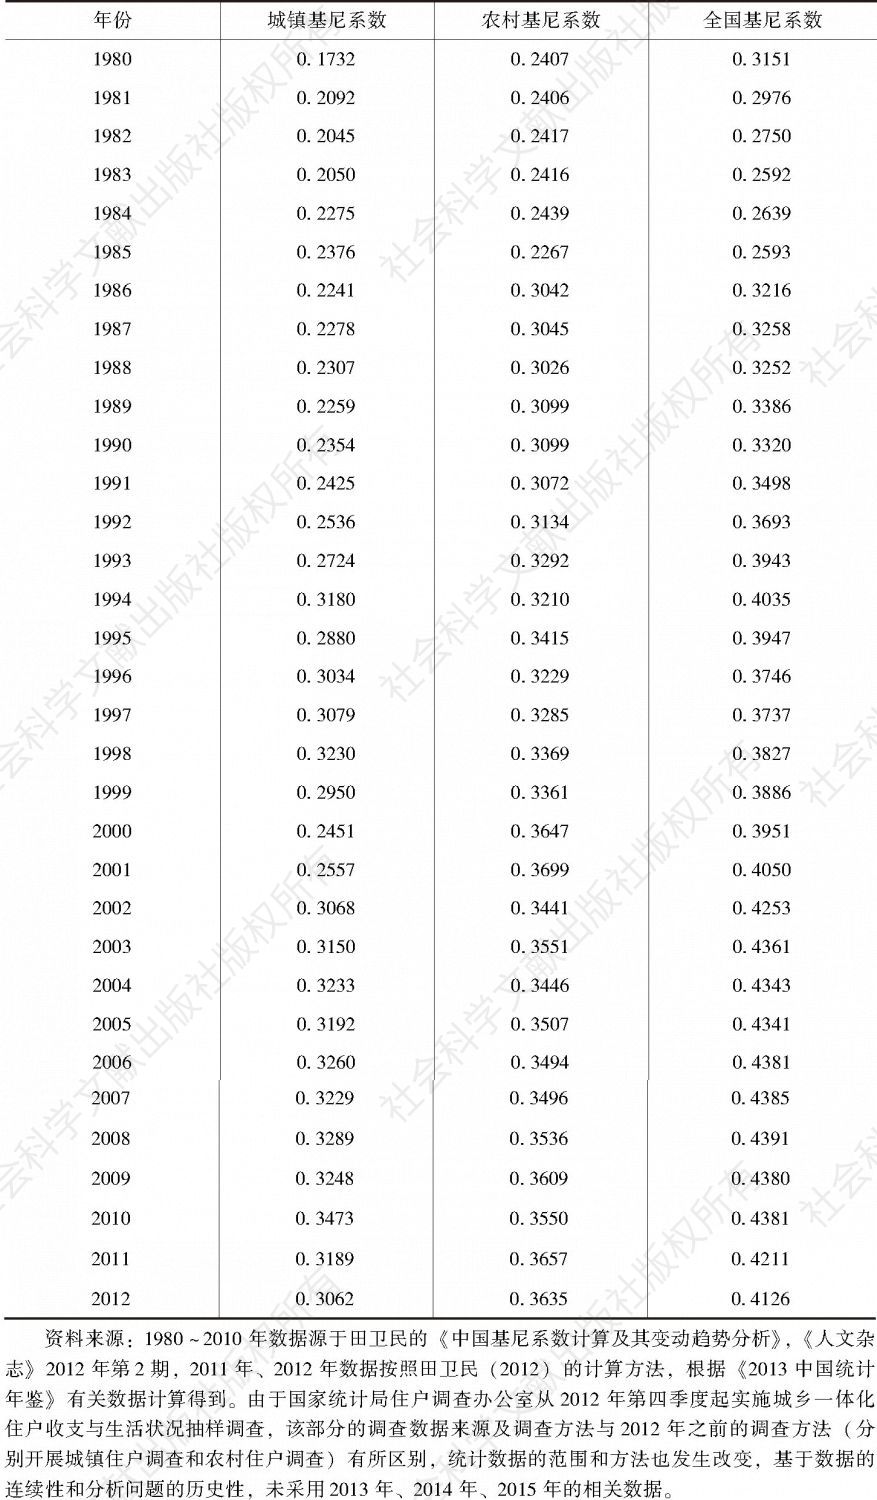 表5-7 中国城镇基尼系数、农村基尼系数、全国基尼系数的变动情况（1980～2012年）